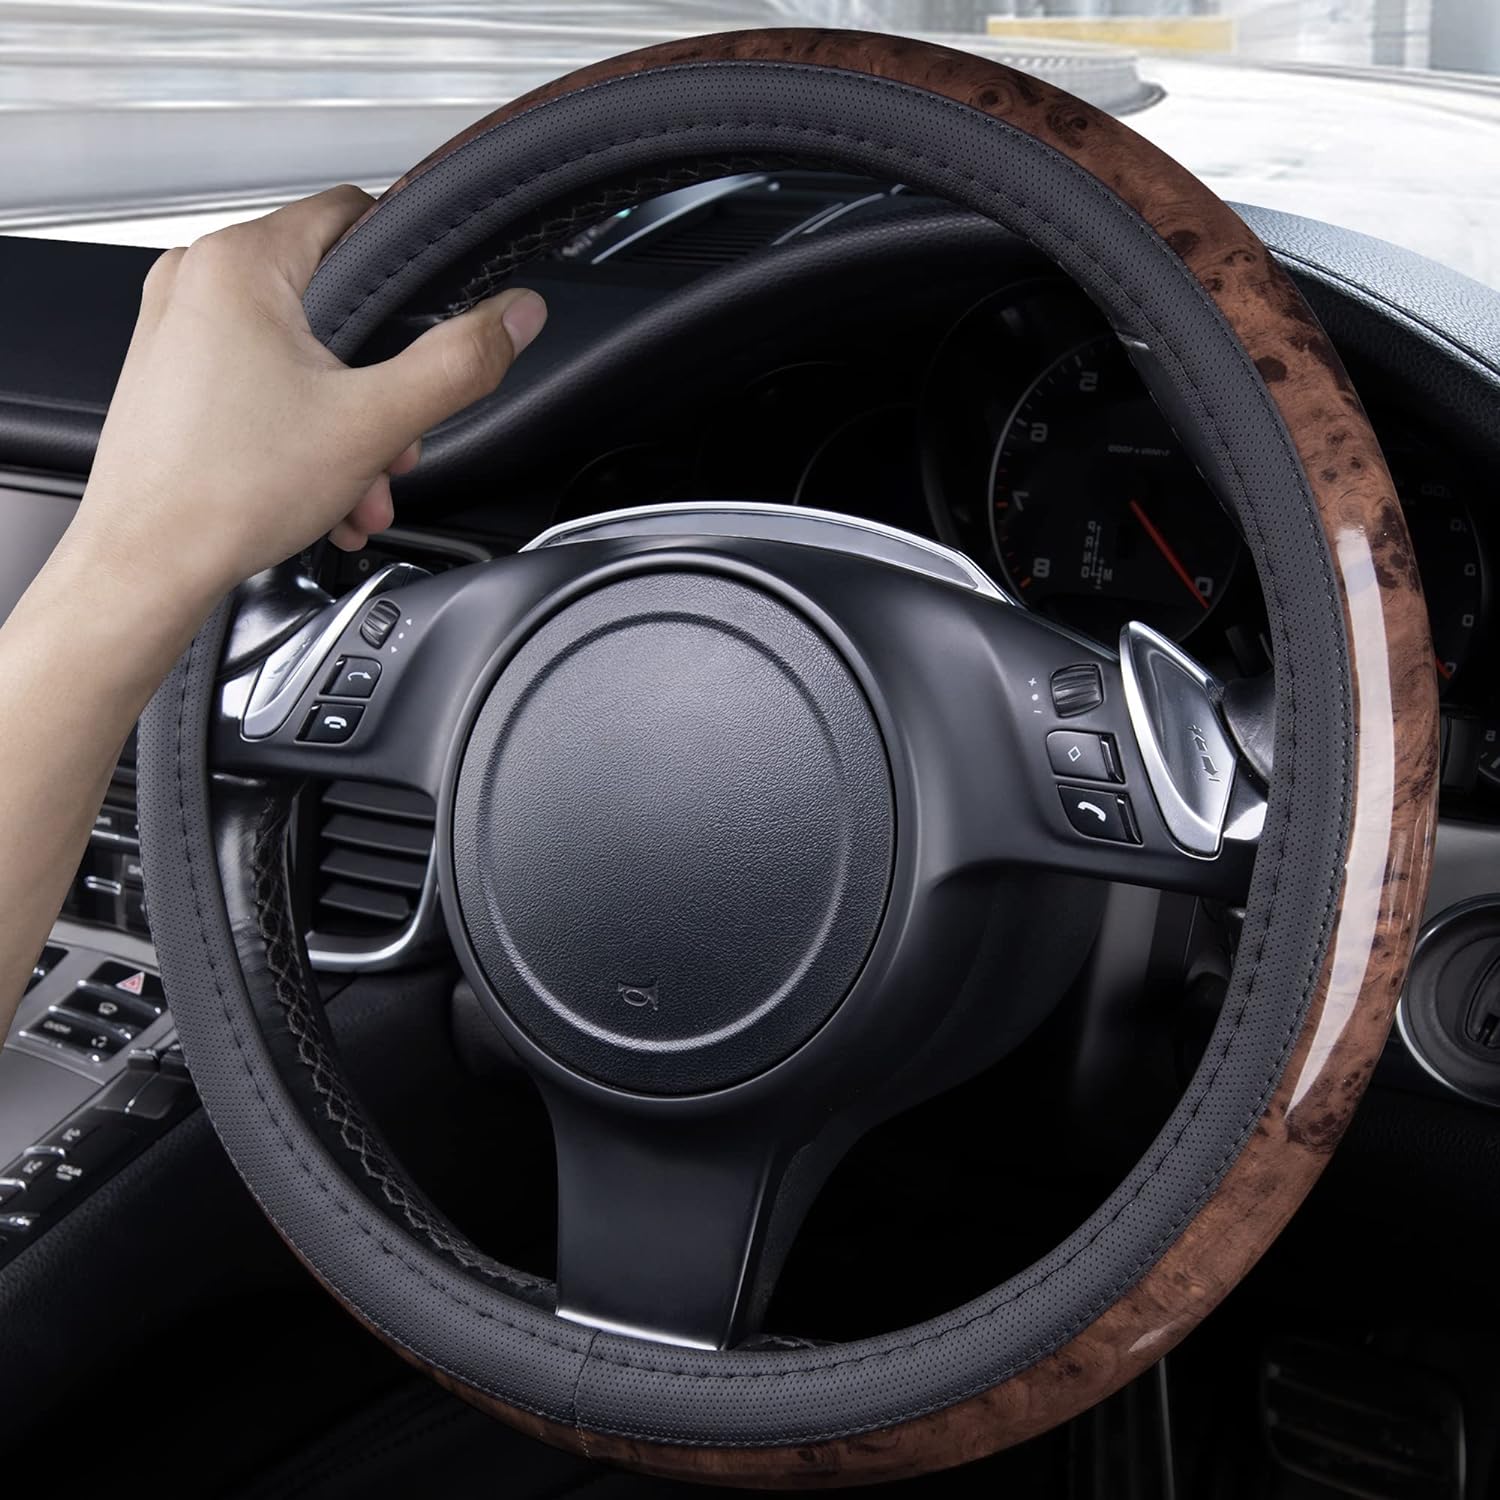 CAR PASS Wood Grain Microfiber Leather Steering Wheel Cover, Universal Fit for 14 1/2-15 inch Beige Steering Wheel, Anti-Skip Veins Design,Trucks, Suvs,Vans, Sedans (Beige)